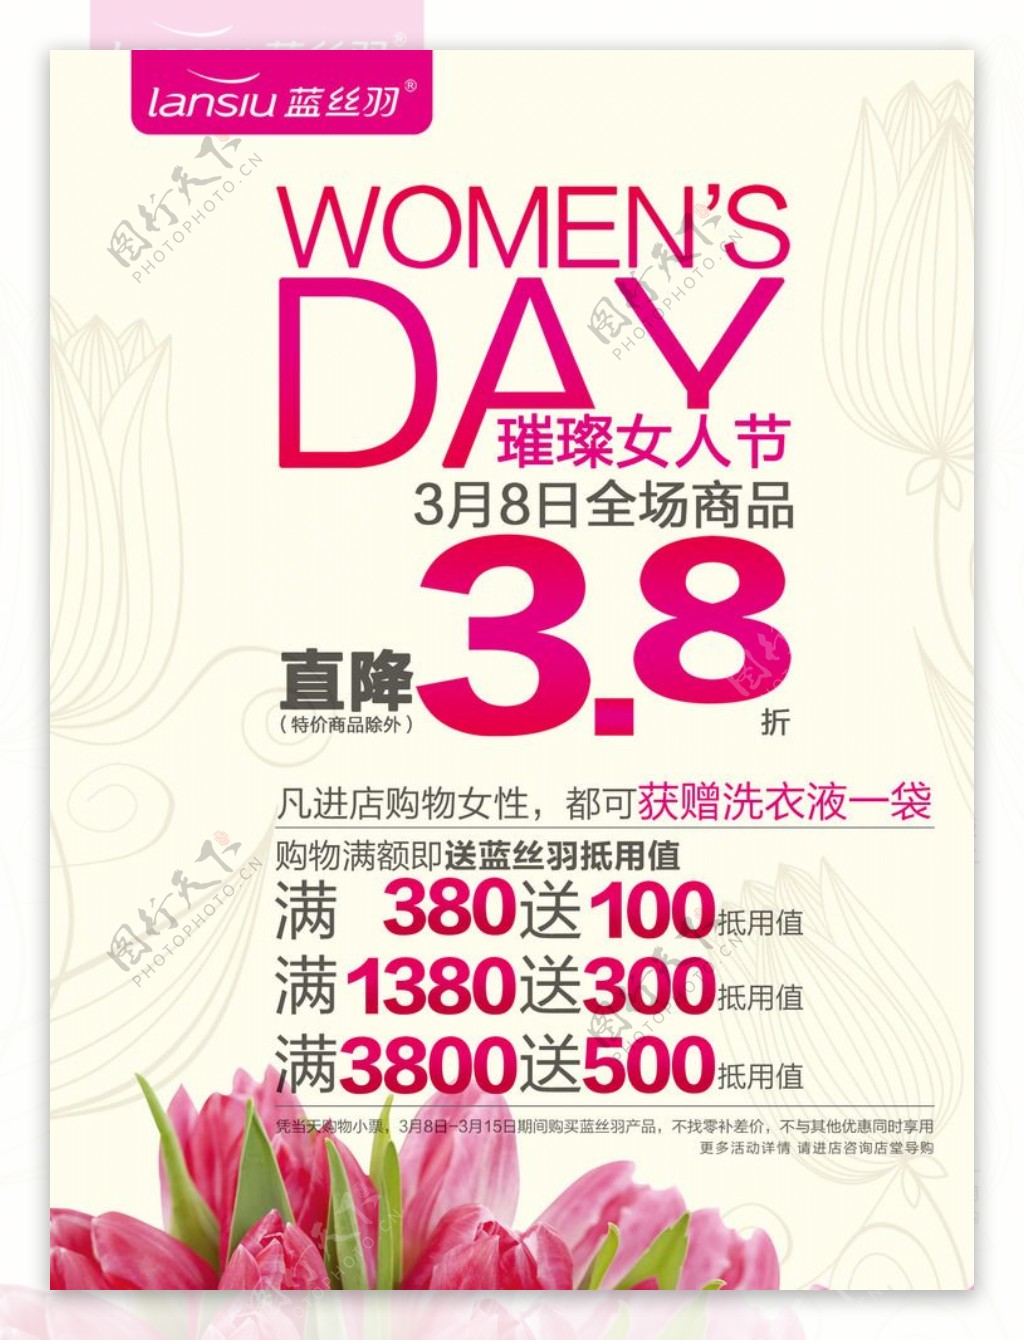 38妇女节商店促销广告牌